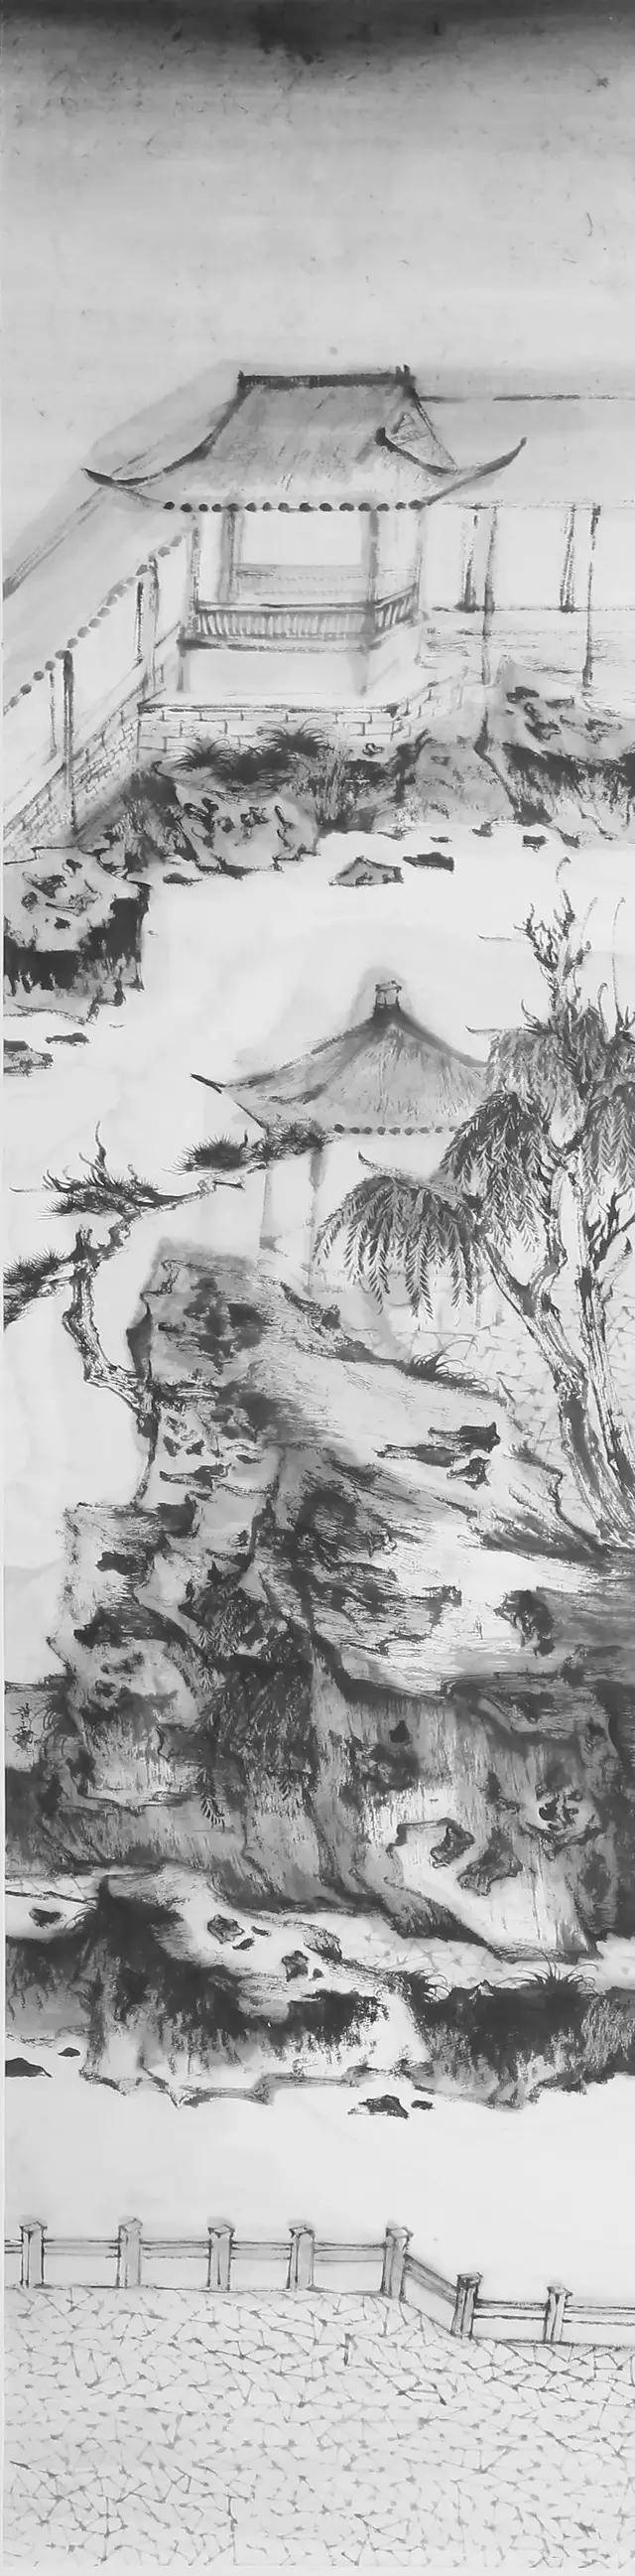 2014年《中国国家艺术》采访黄勤:浙派山水画的传承—青年山水画家